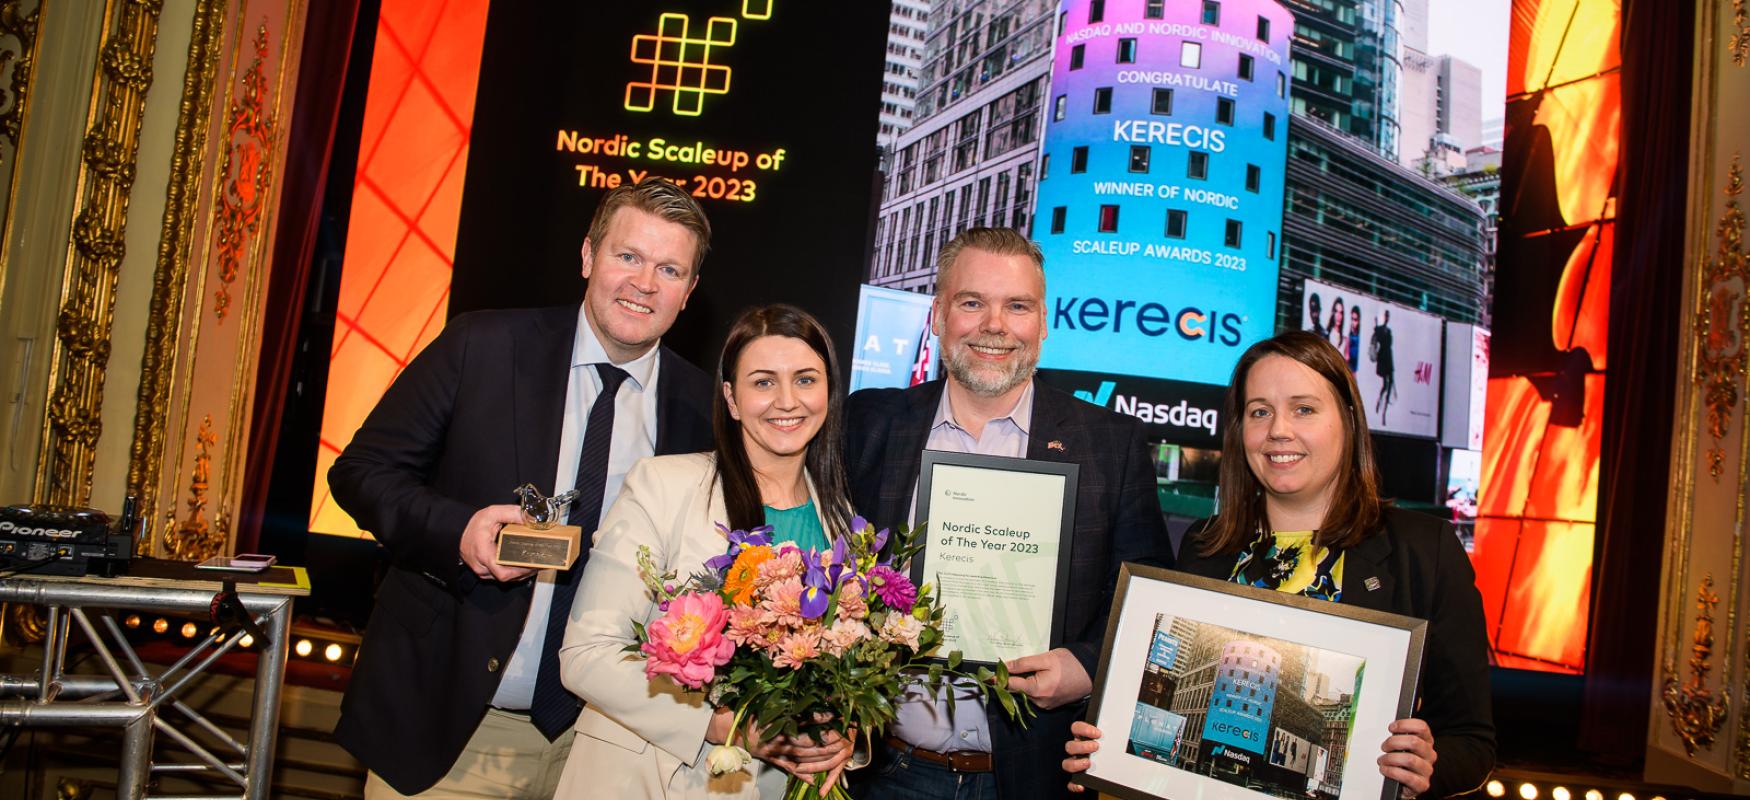 Vinderne af Nordic Scaleup Awards på scenen